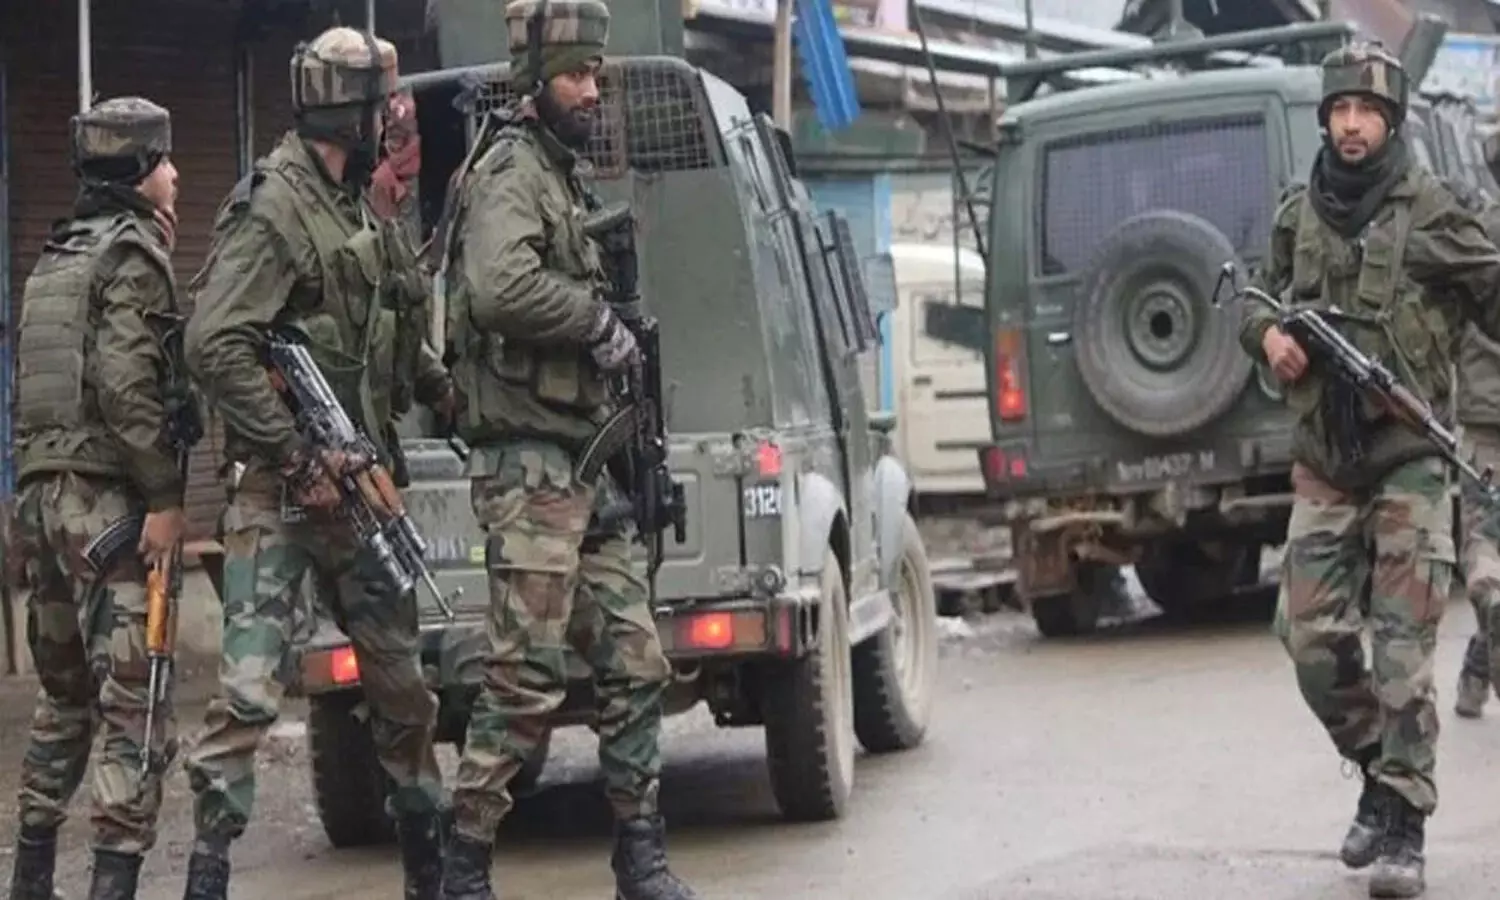 श्रीनगर में सुरक्षाबलों और आतंकियों के बीच मुठभेड़ में 2 आतंकी ढेर, अभी भी ऑपरेशन जारी